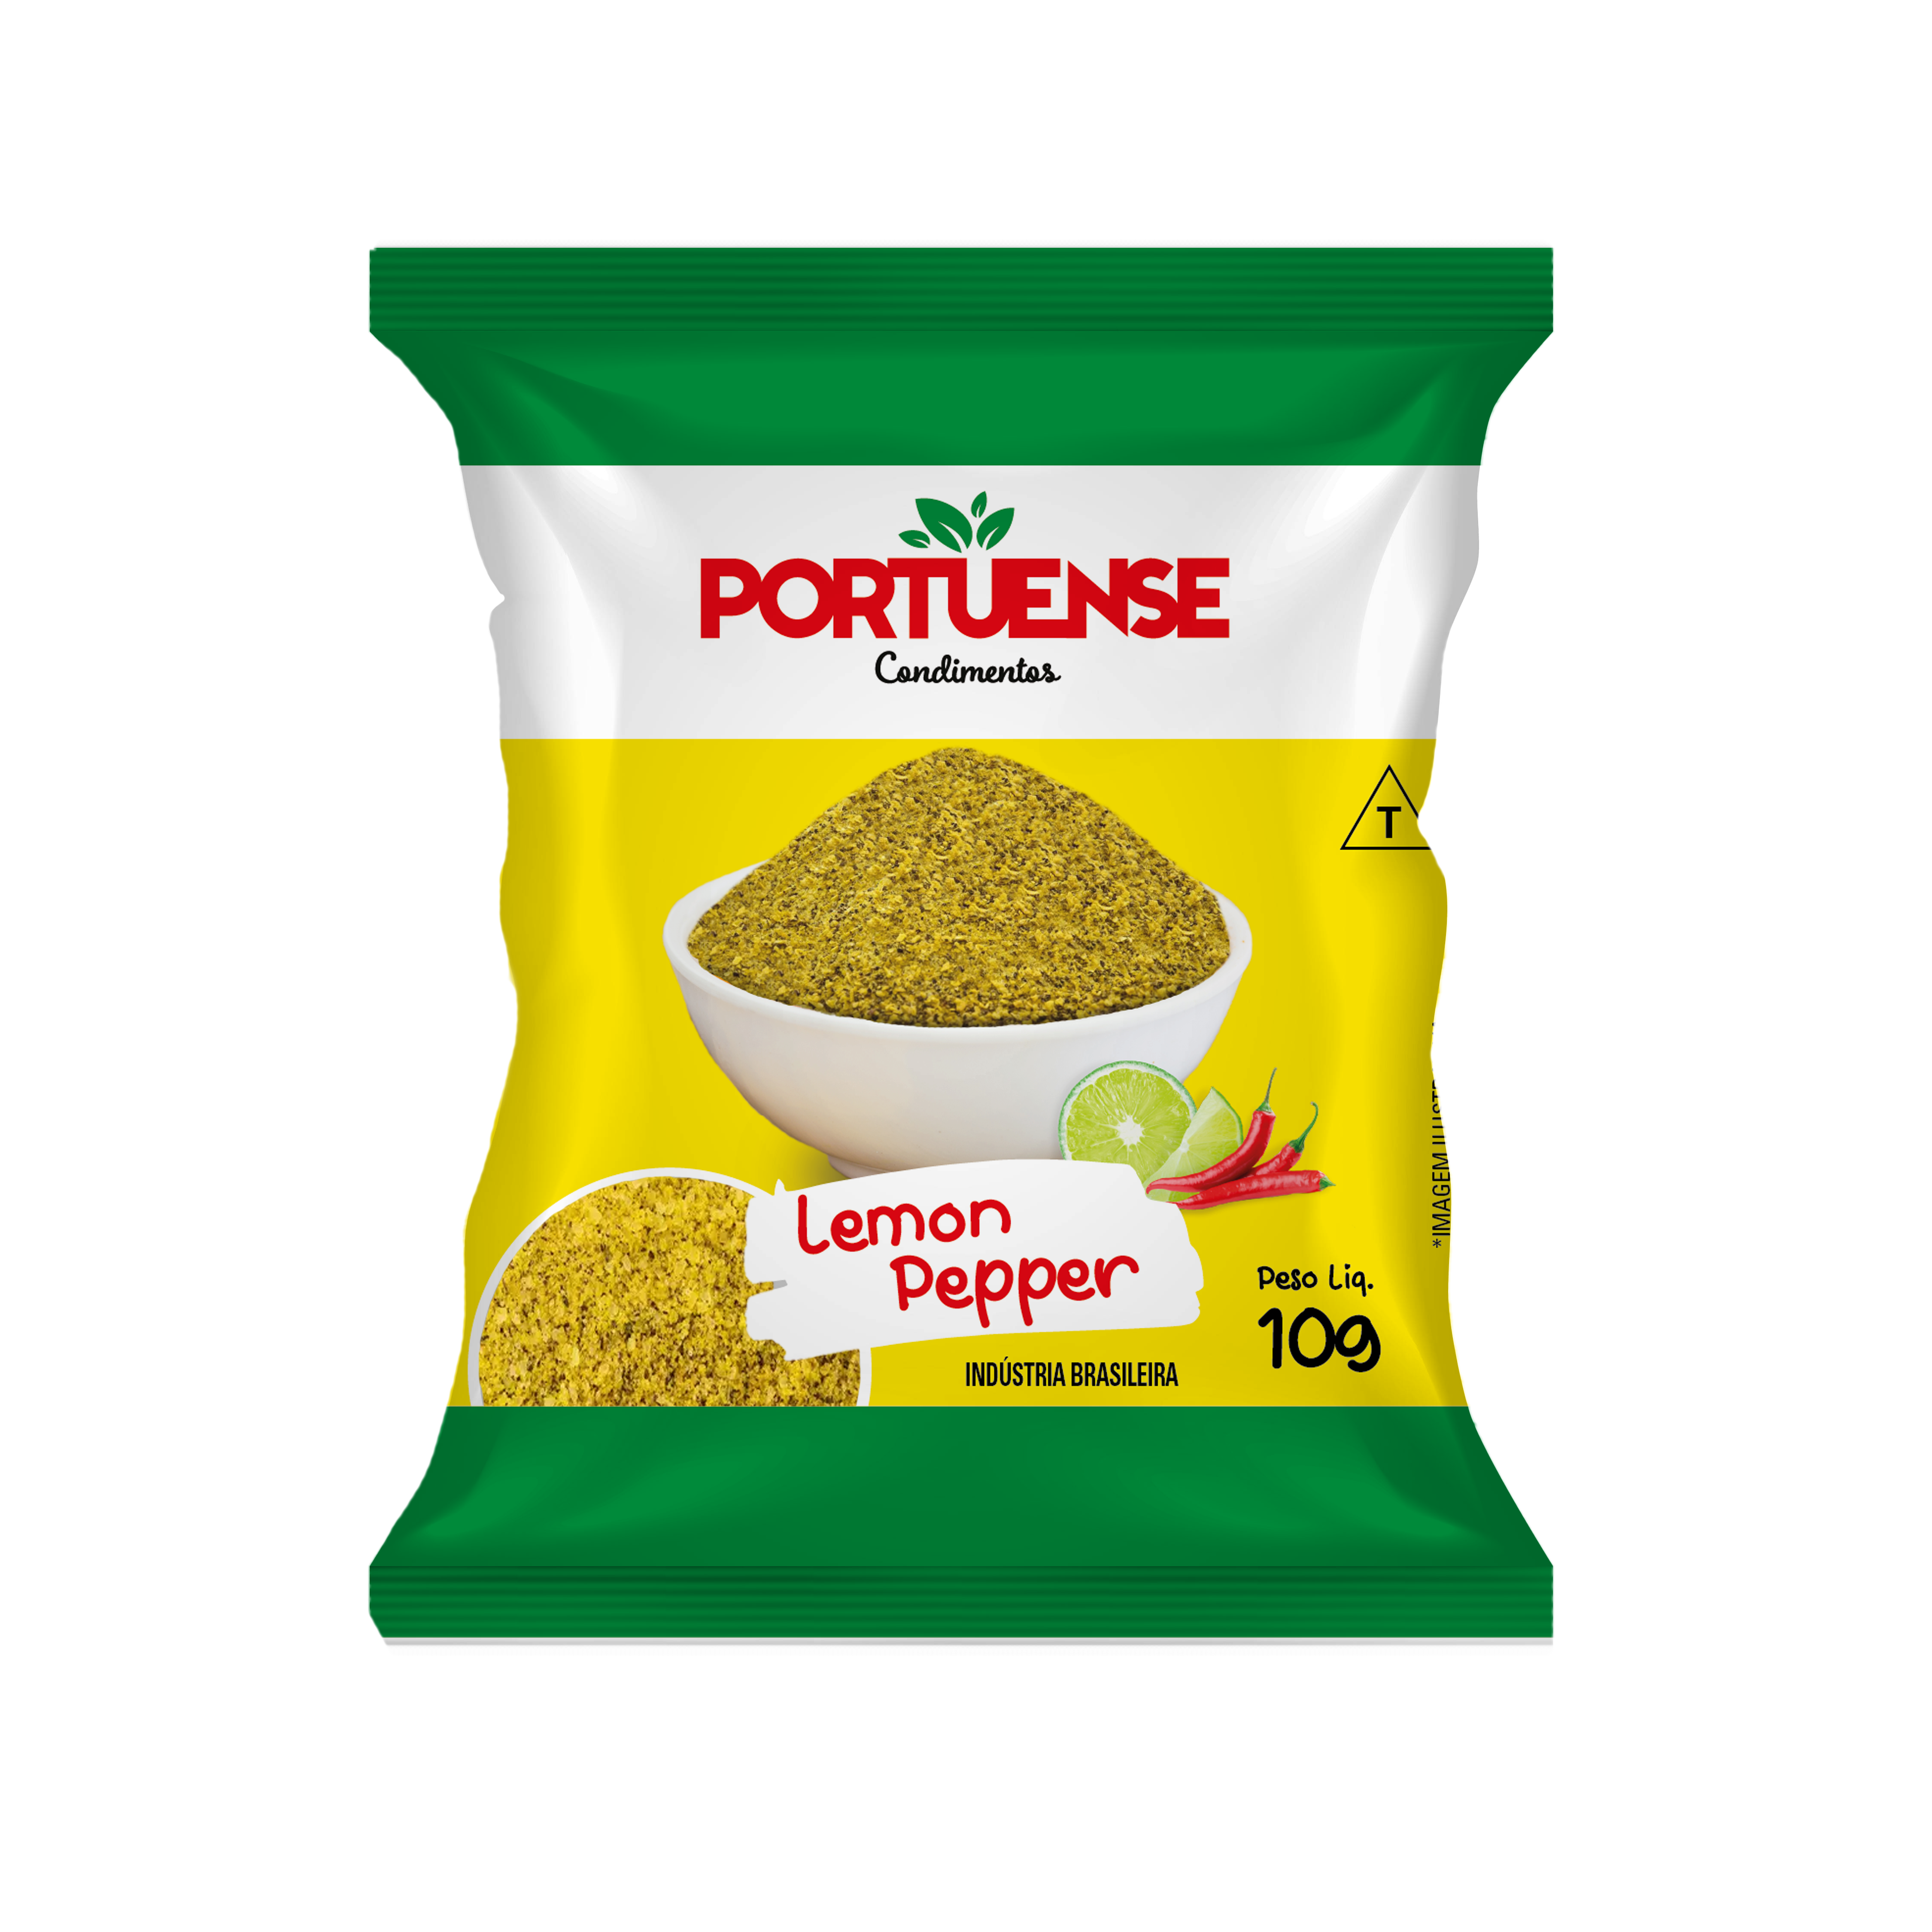 lemon pepper 10g condimentos portuense